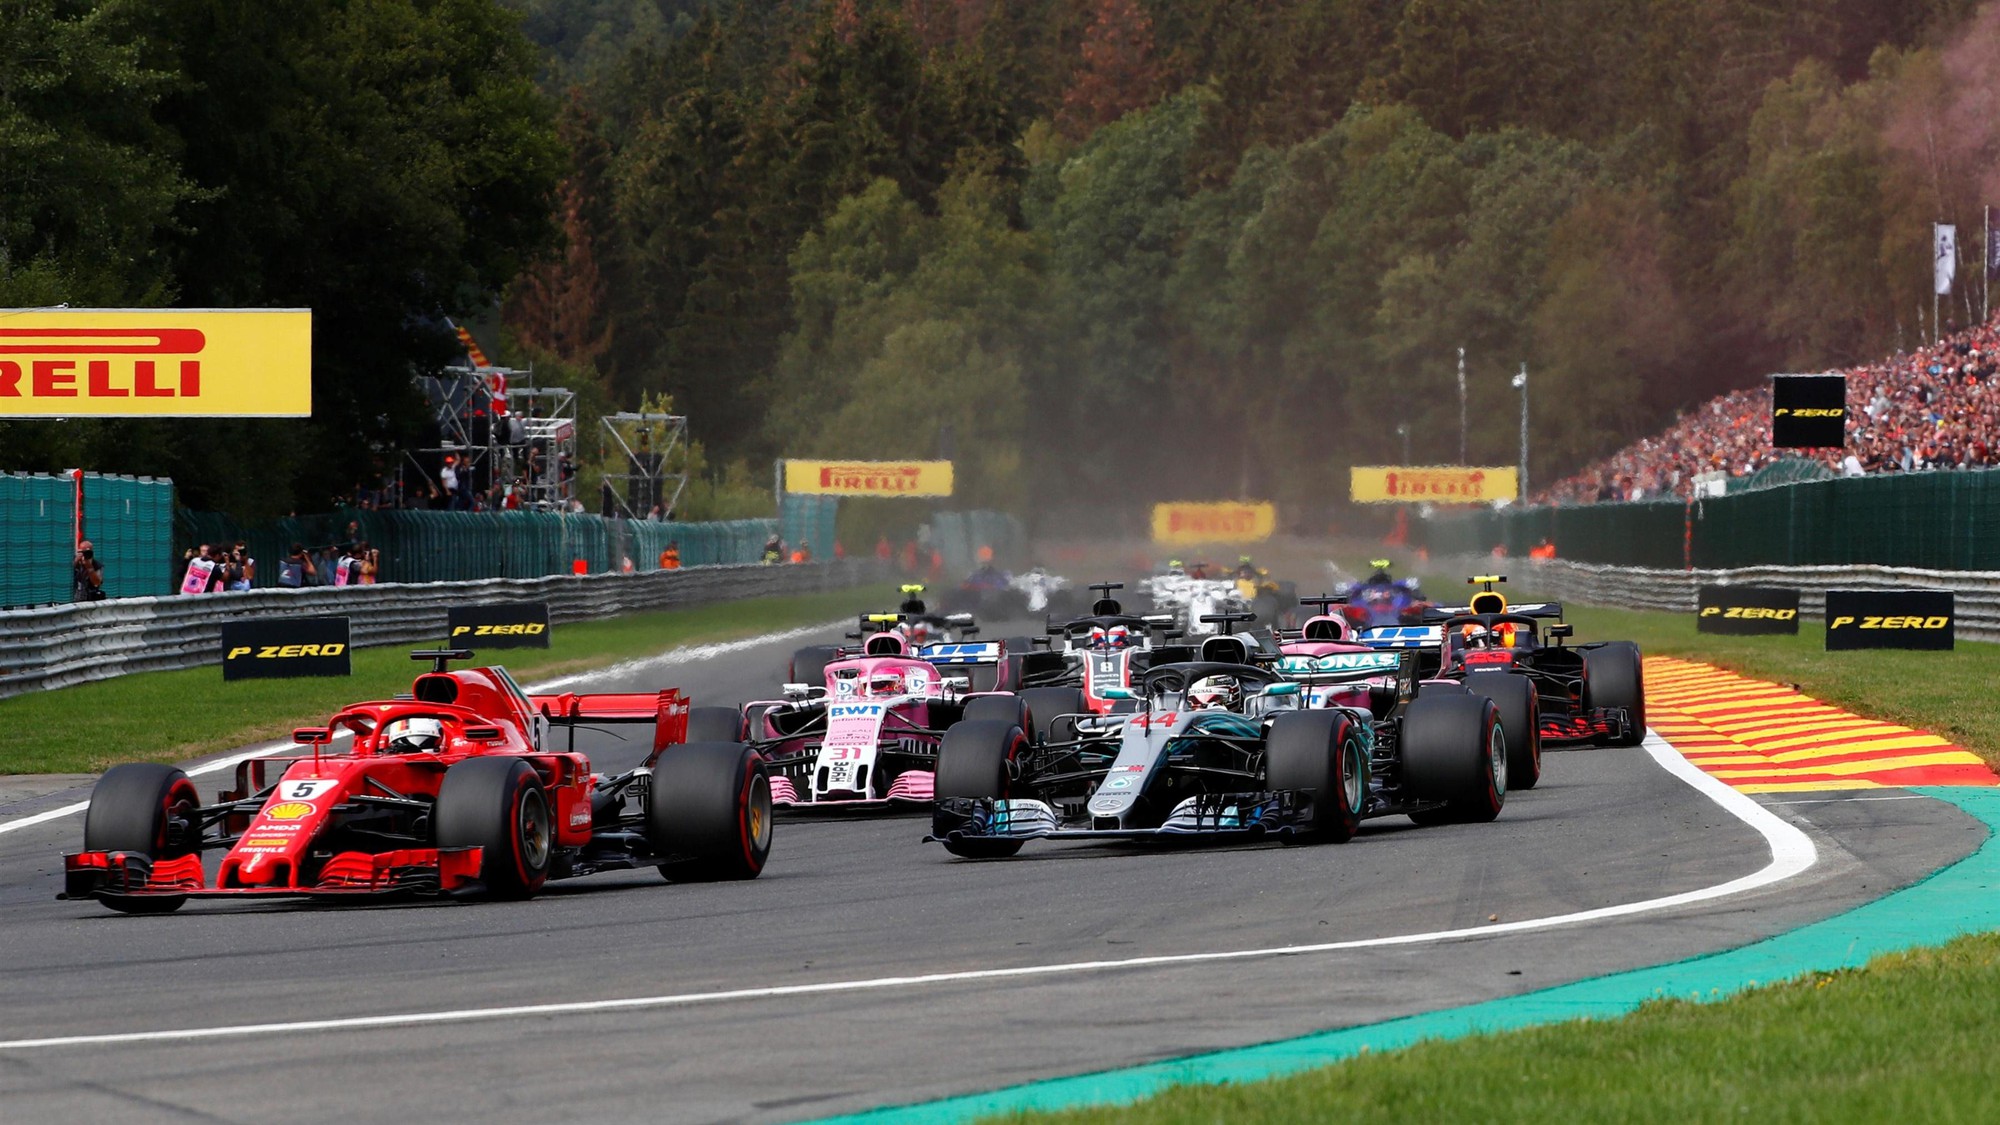 Thua cay đắng ở Belgian GP, Hamilton quay ra tố Vettel chơi xấu - Ảnh 2.